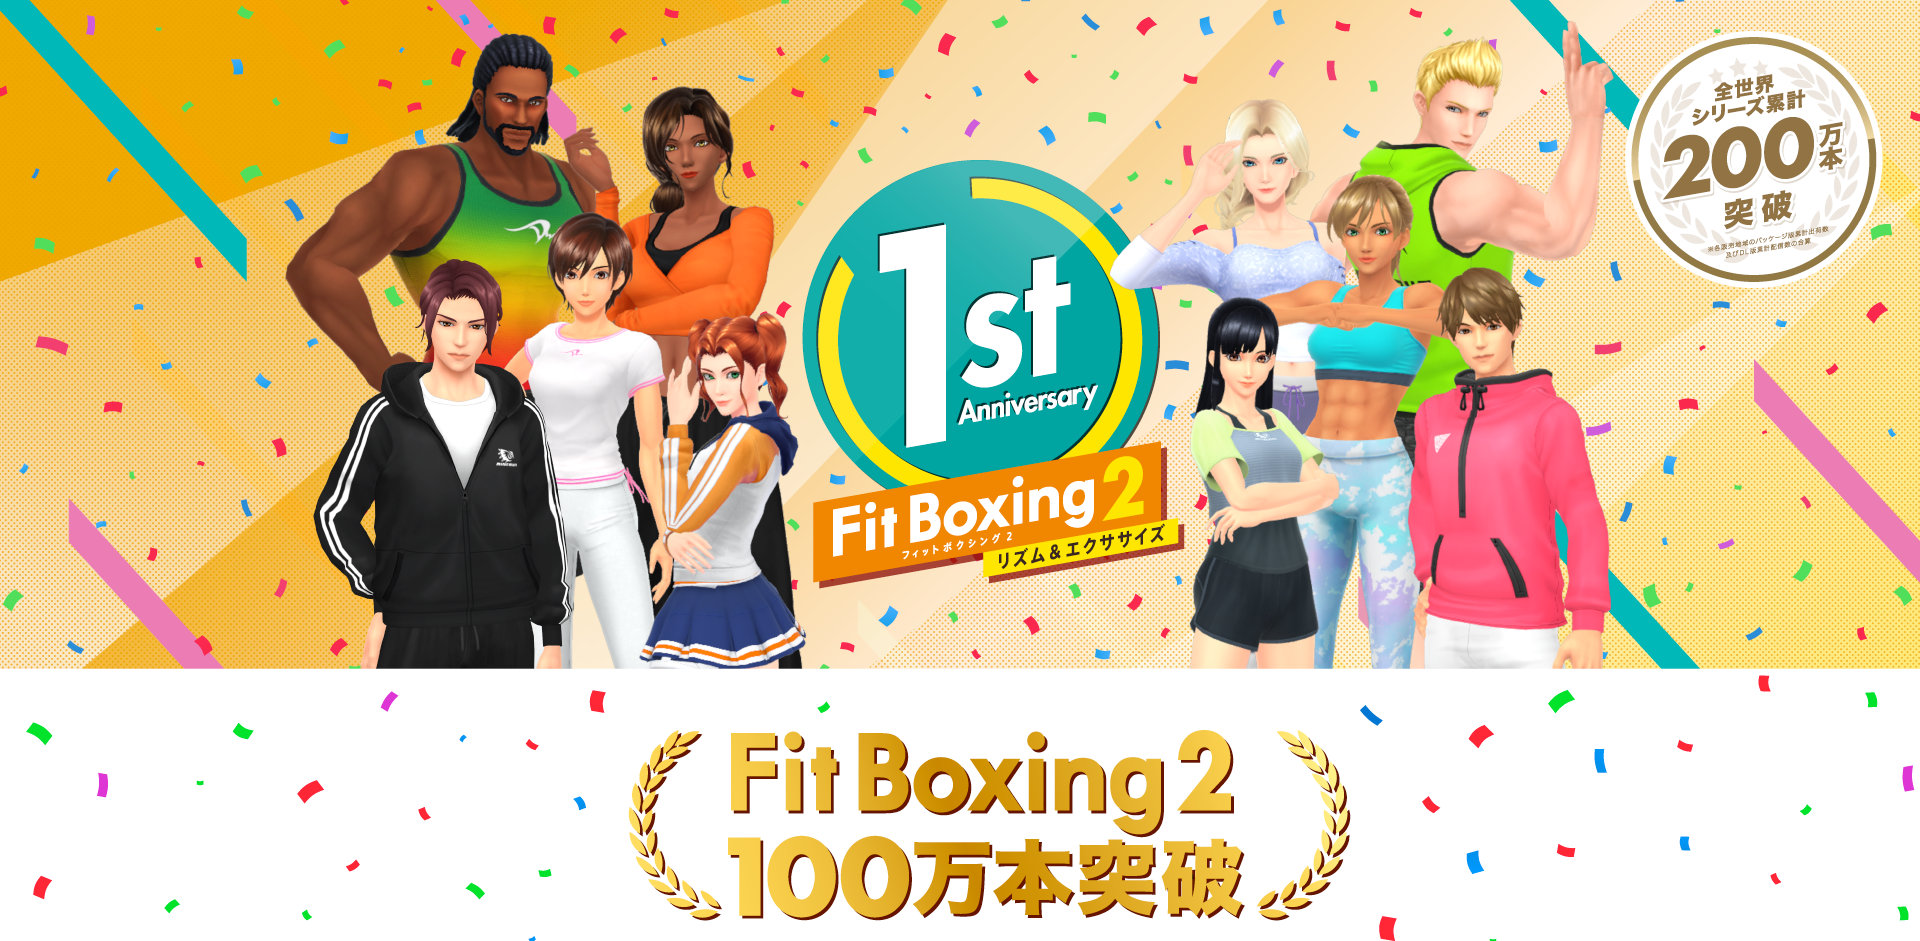 Fit Boxing 2 が 100 万本を突破 - シリーズ累計200万本